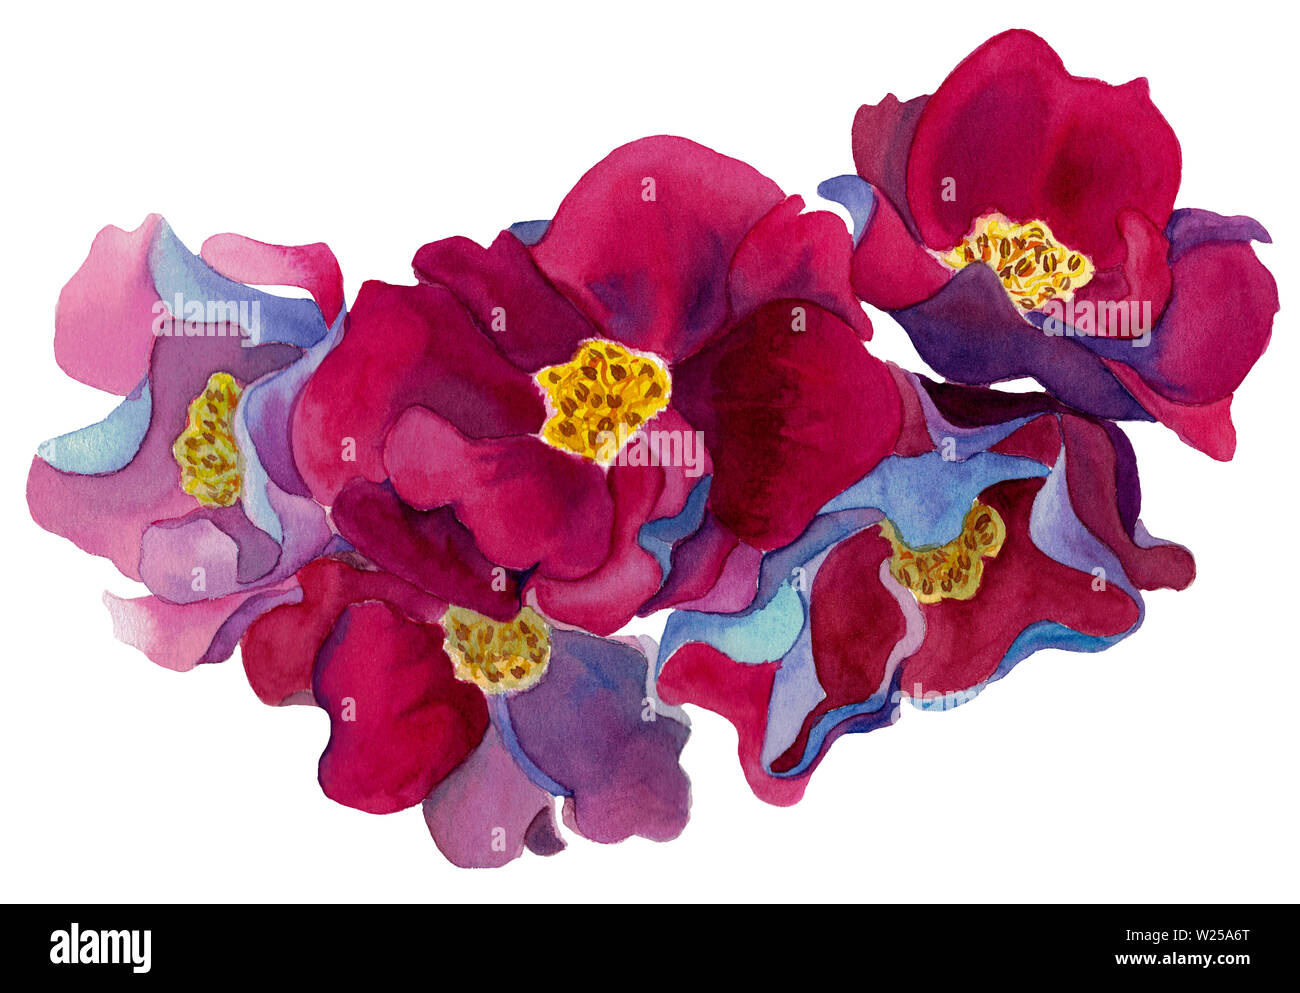 L'aquarelle à la main ensemble de fleurs fantastiques avec des pétales de rose et rouge, bleu et violet, isolé sur fond blanc. Pour la conception de décor de mariage. Banque D'Images